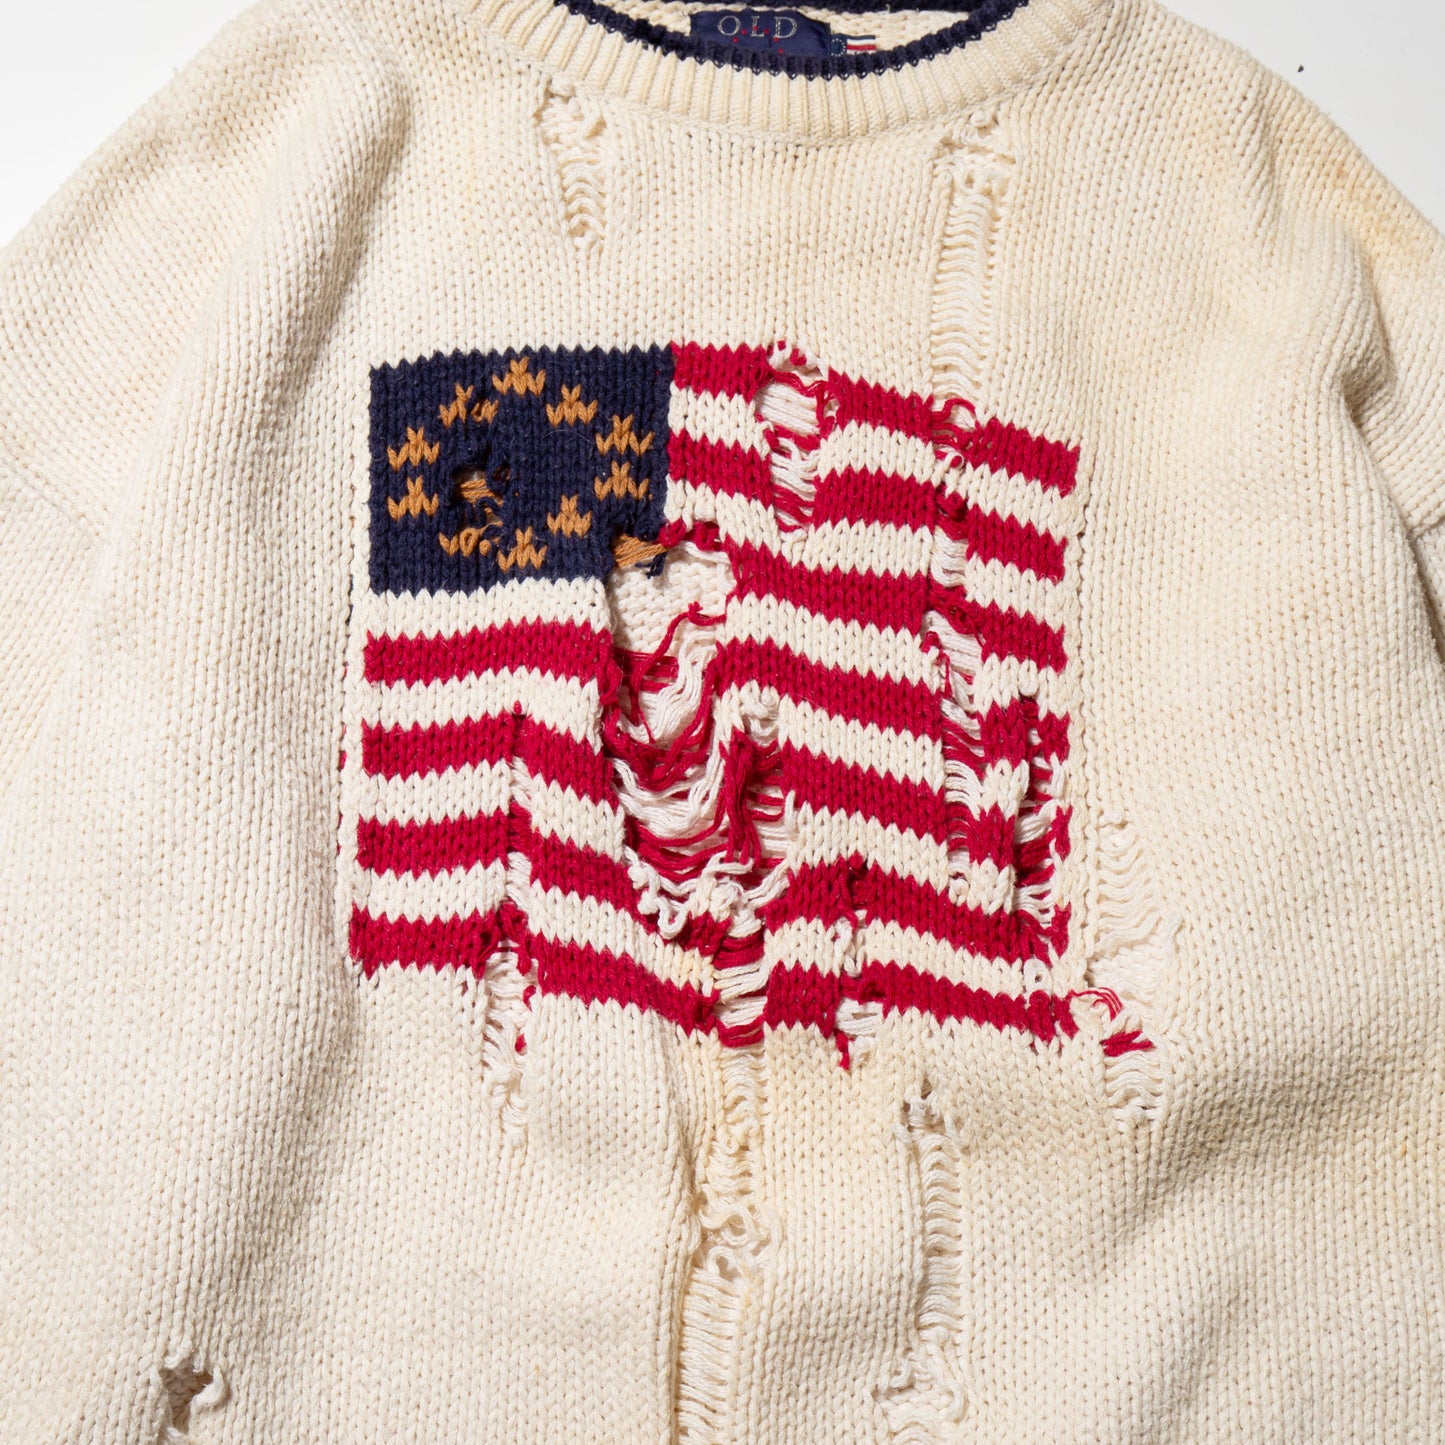 vintage broken flag sweater